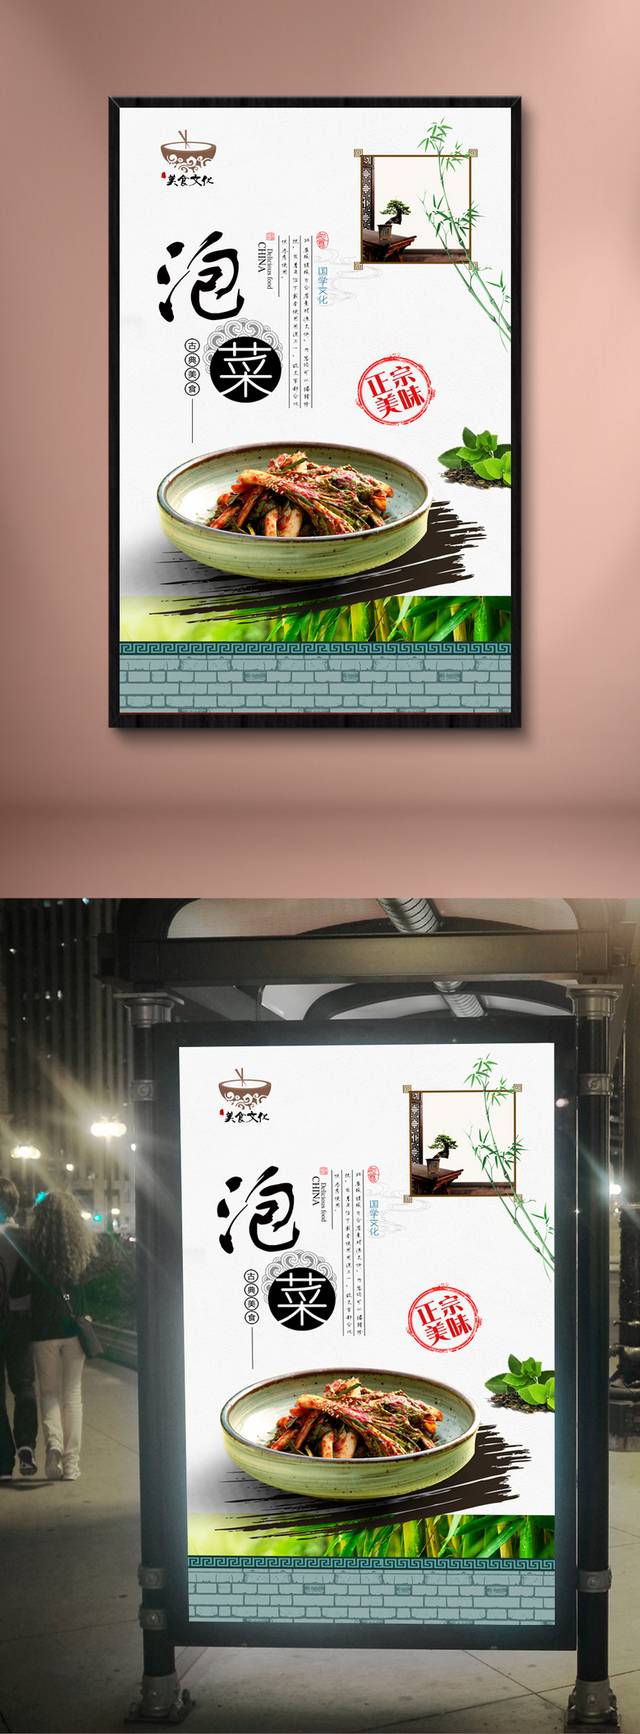 中国风经典泡菜宣传海报设计